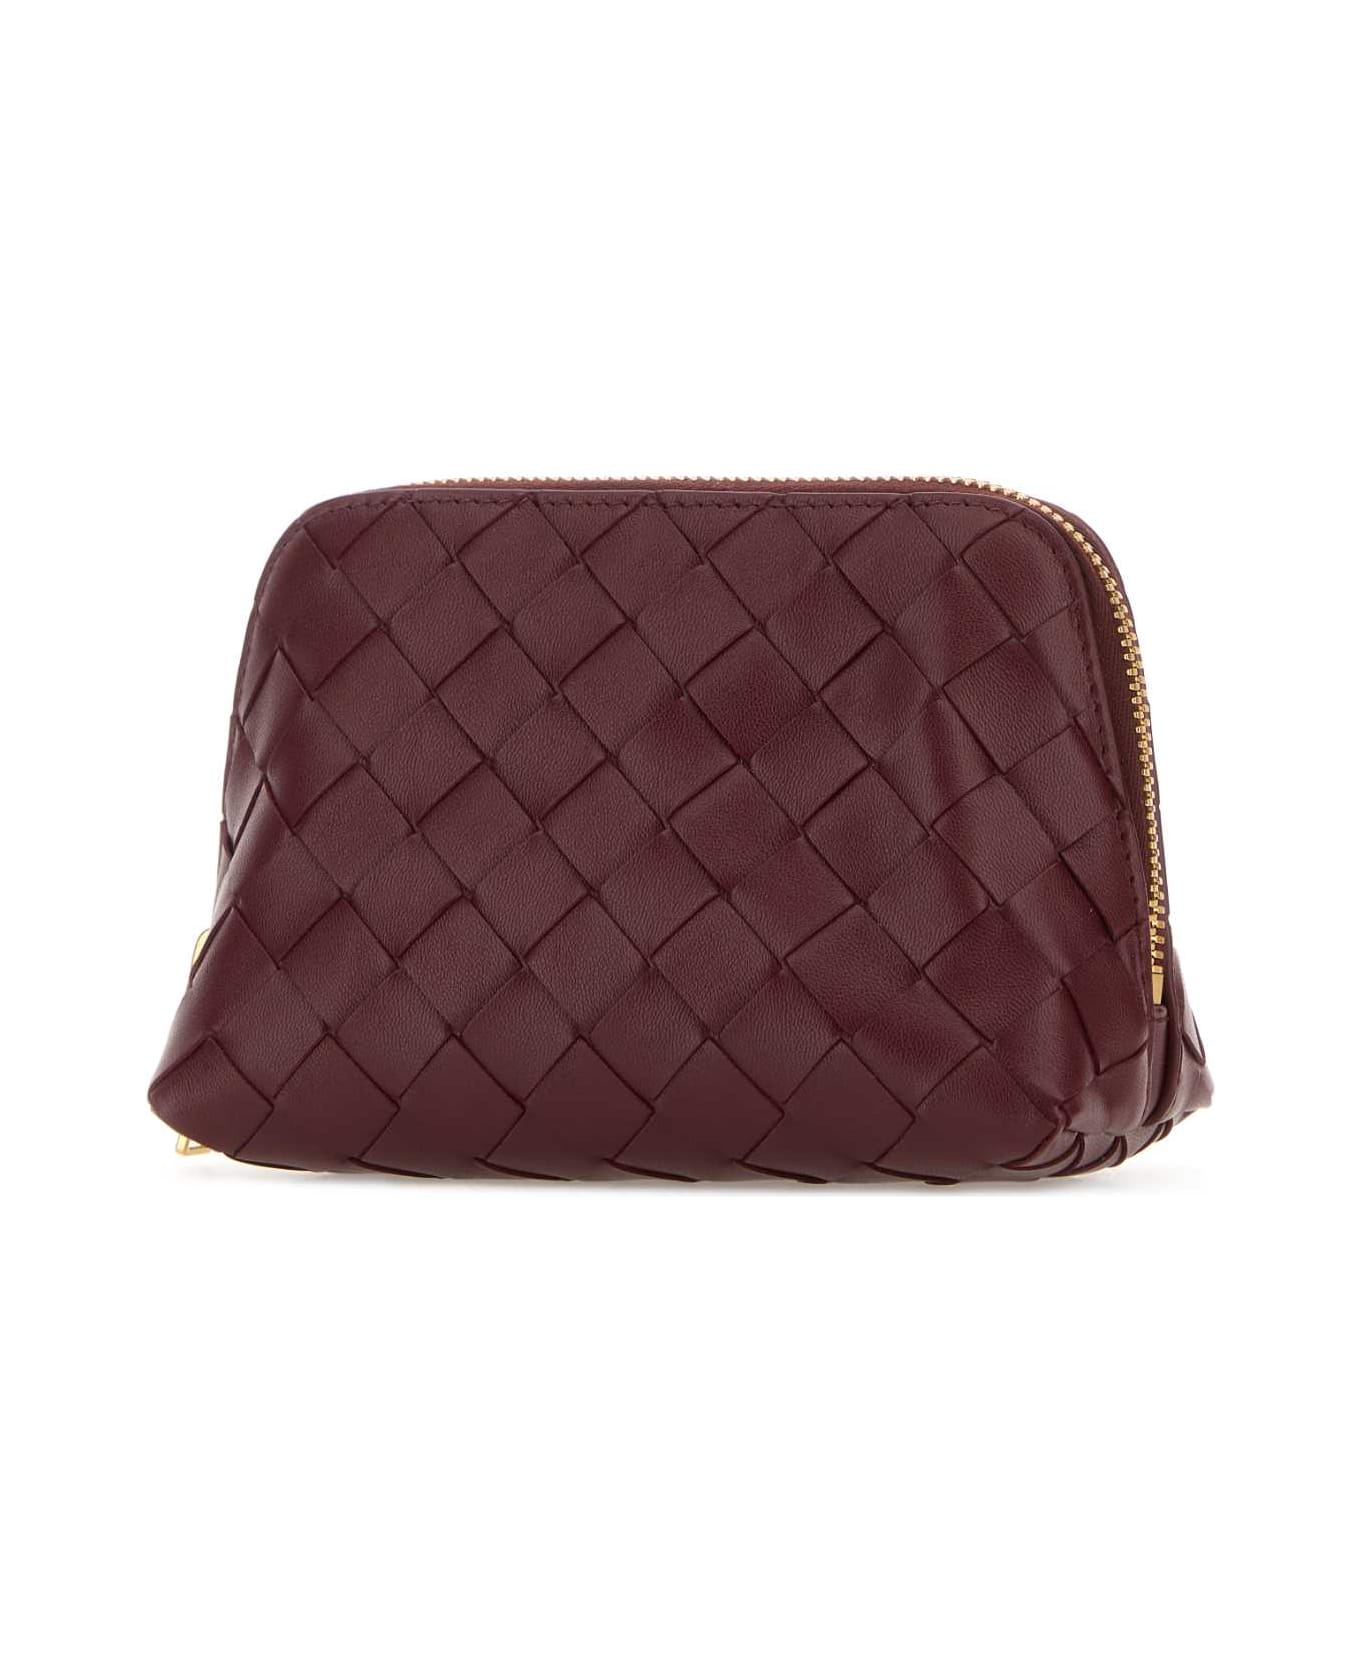 Bottega Veneta Burgundy Leather Beauty Case - BORDEAUX クラッチバッグ